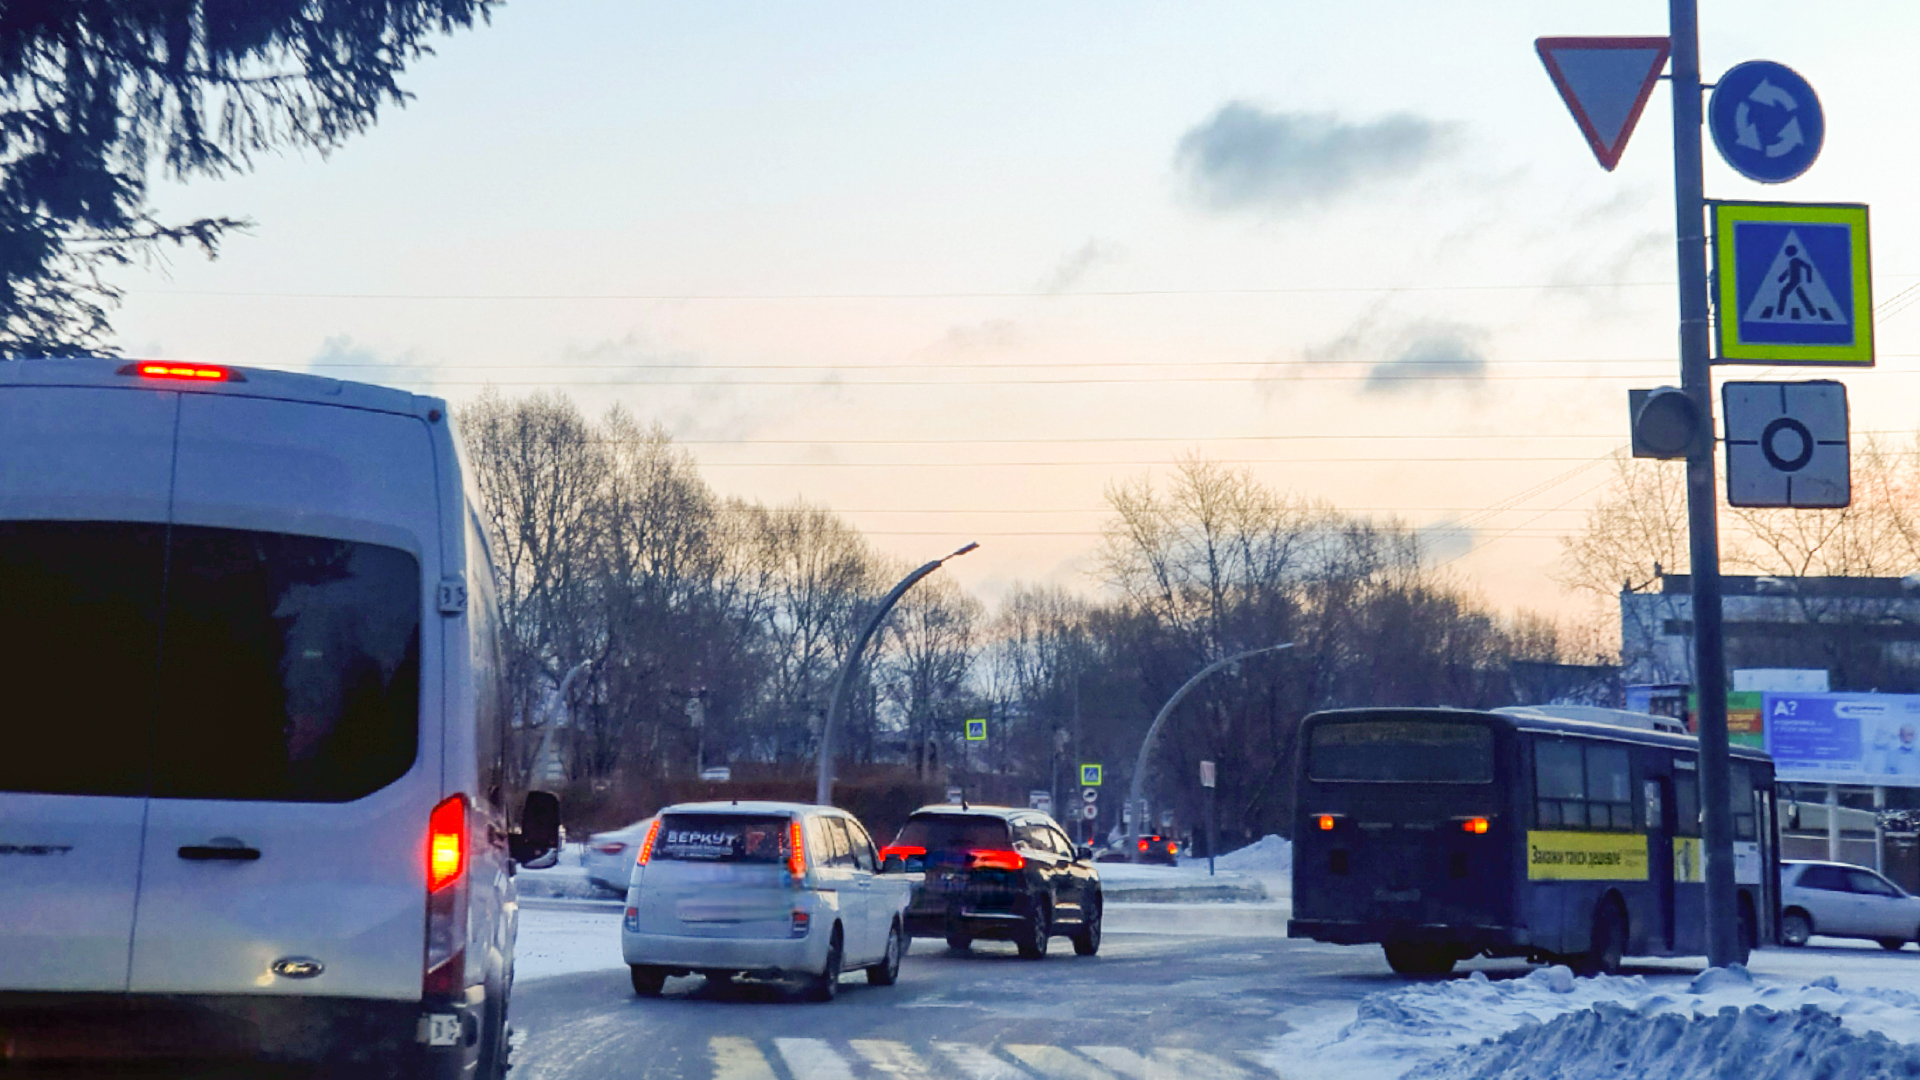 Транспорт, паркующийся на остановках, и водителей-нарушителей выявляют в рамках операции «Автобус»